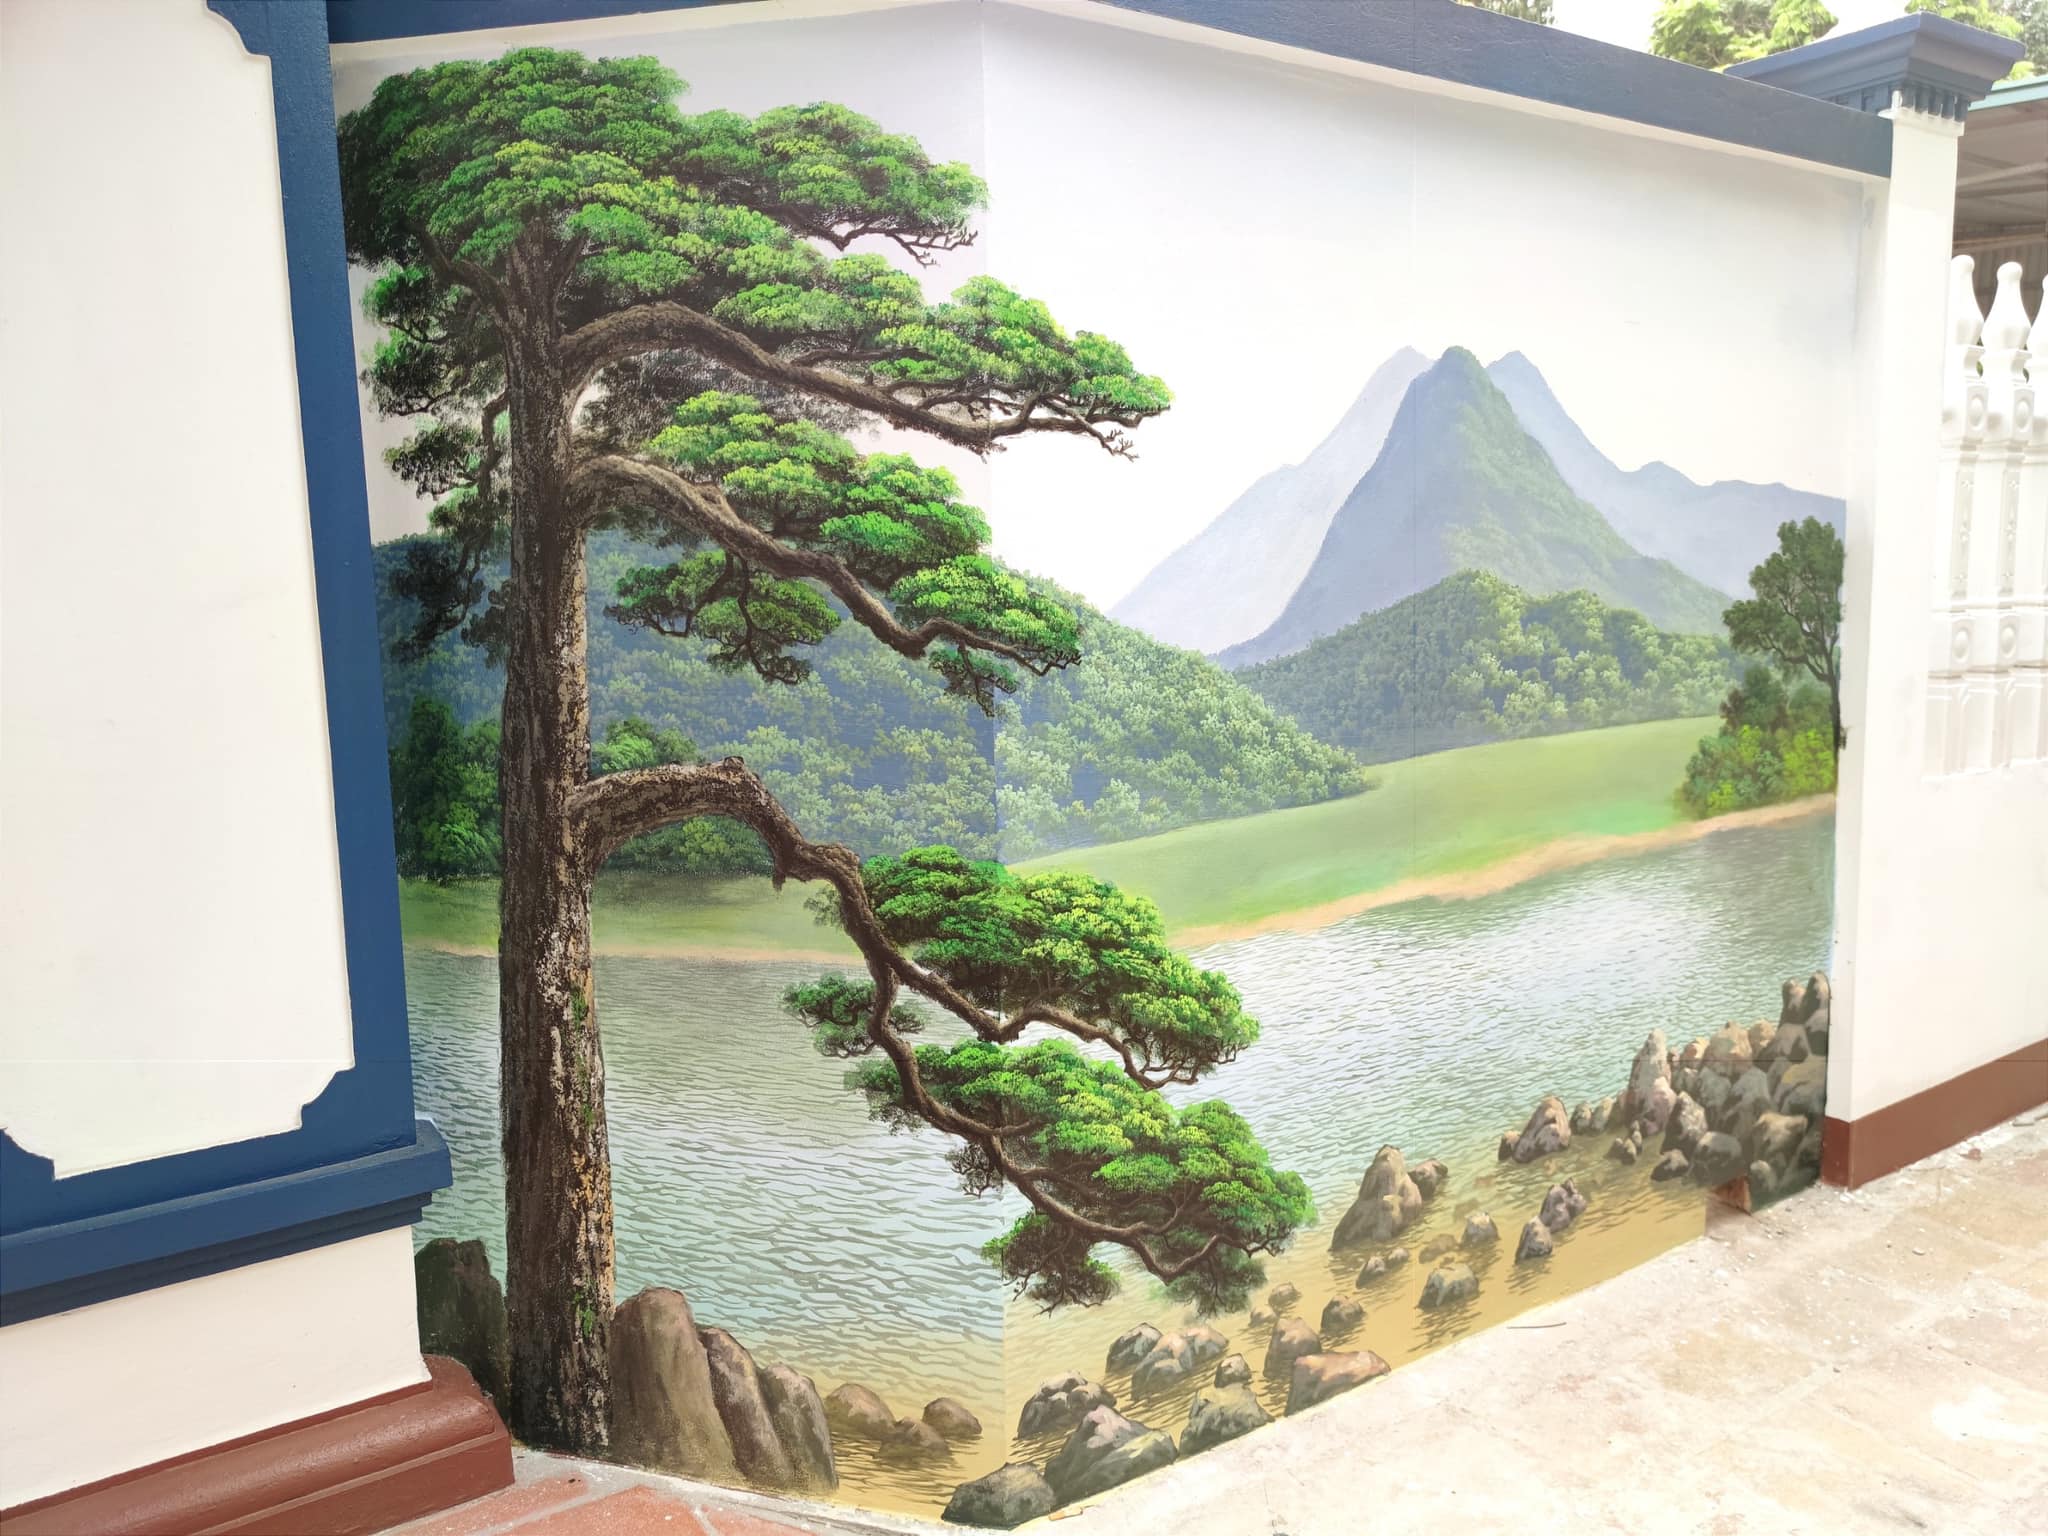 Vẽ tranh tường sơn thủy là một nghệ thuật tuyệt vời mang lại không gian sống động và tươi mới cho căn phòng của bạn. Mỗi chi tiết sơn thủy được tạo ra và phối hợp với nhau để tạo nên một bức tranh tuyệt đẹp. Hãy cùng xem những hình ảnh sơn thủy đẹp mắt và cho phép nó làm mới không gian sống của bạn.